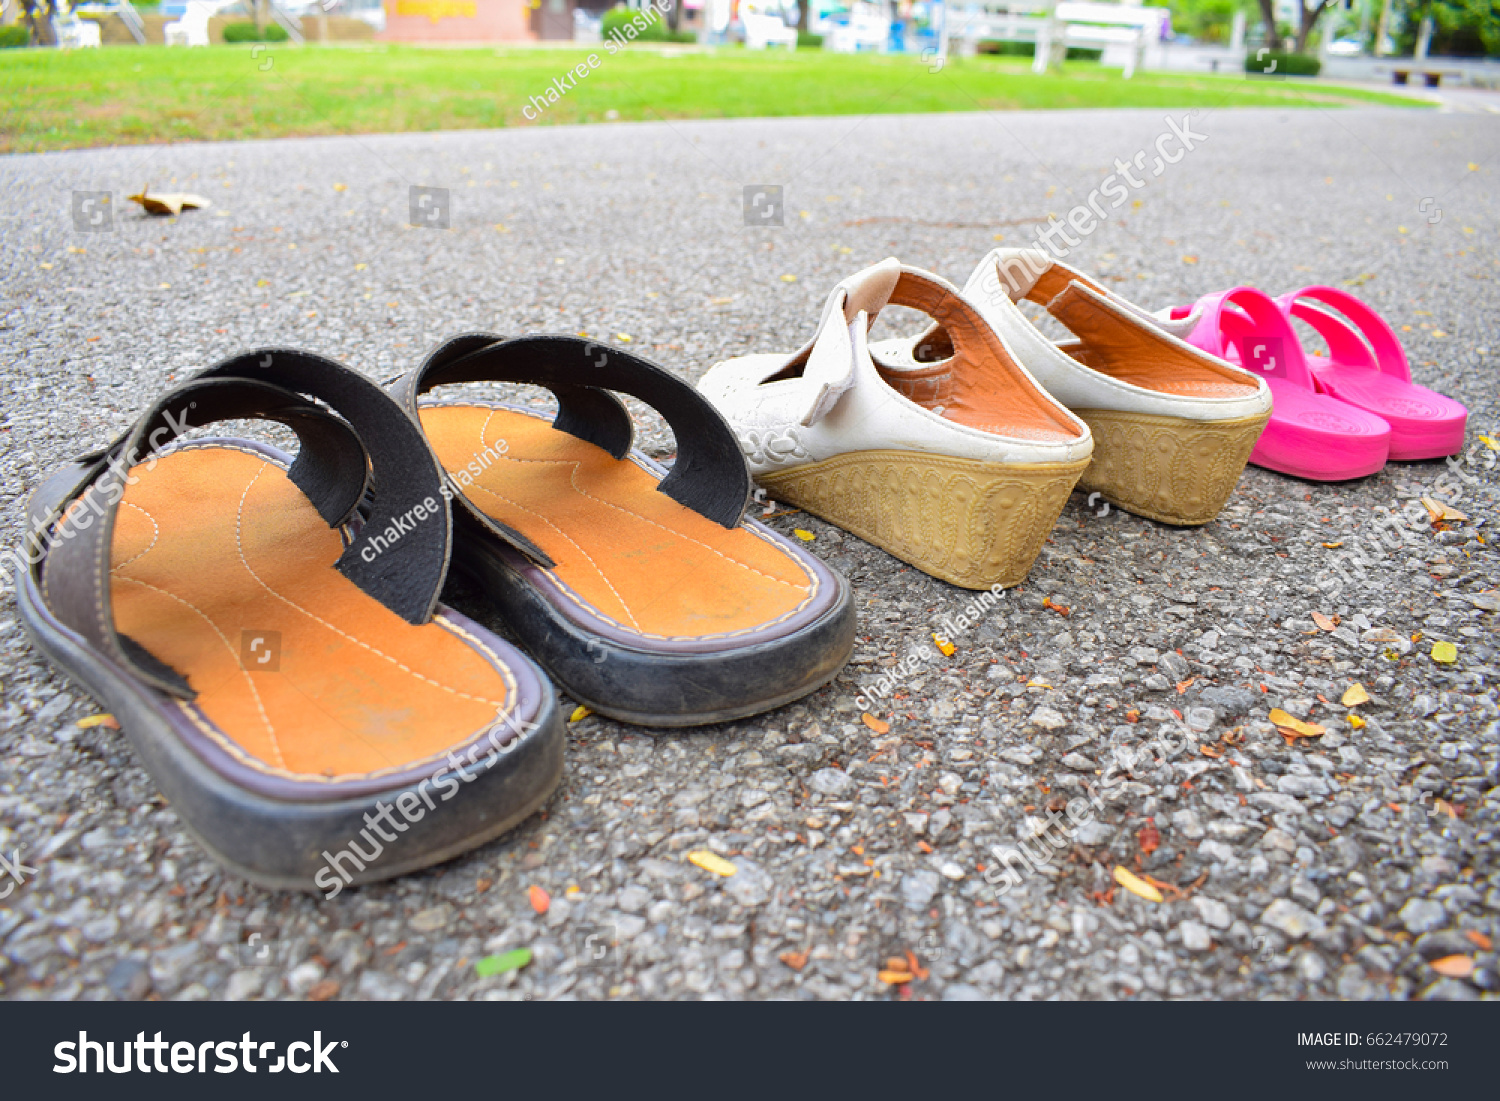 park road shoes